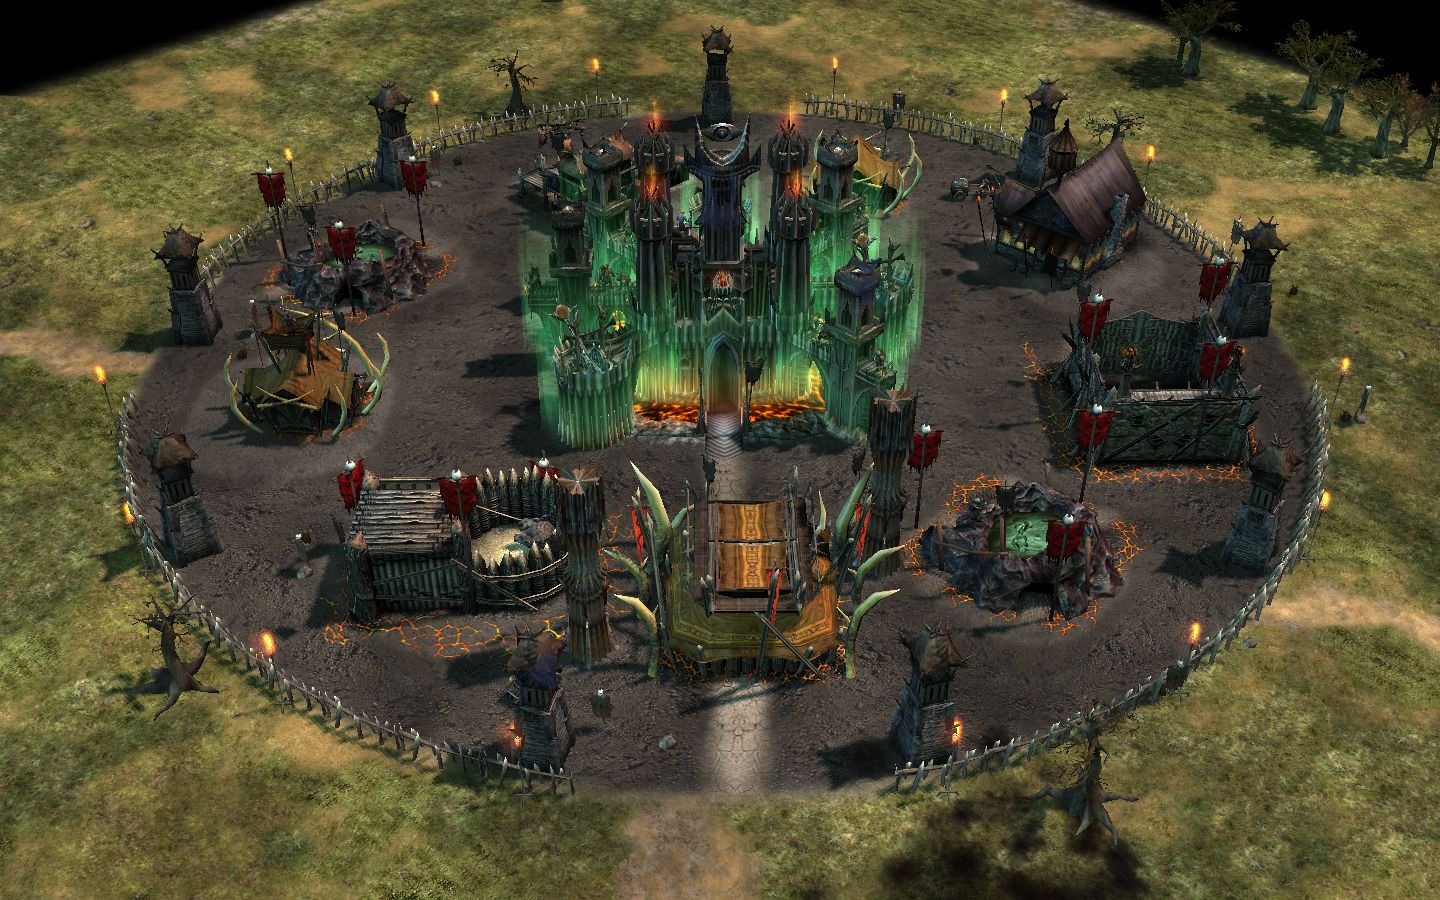 Minas Tirith Wallpaper - image - RJ-RotWK mod for Battle for